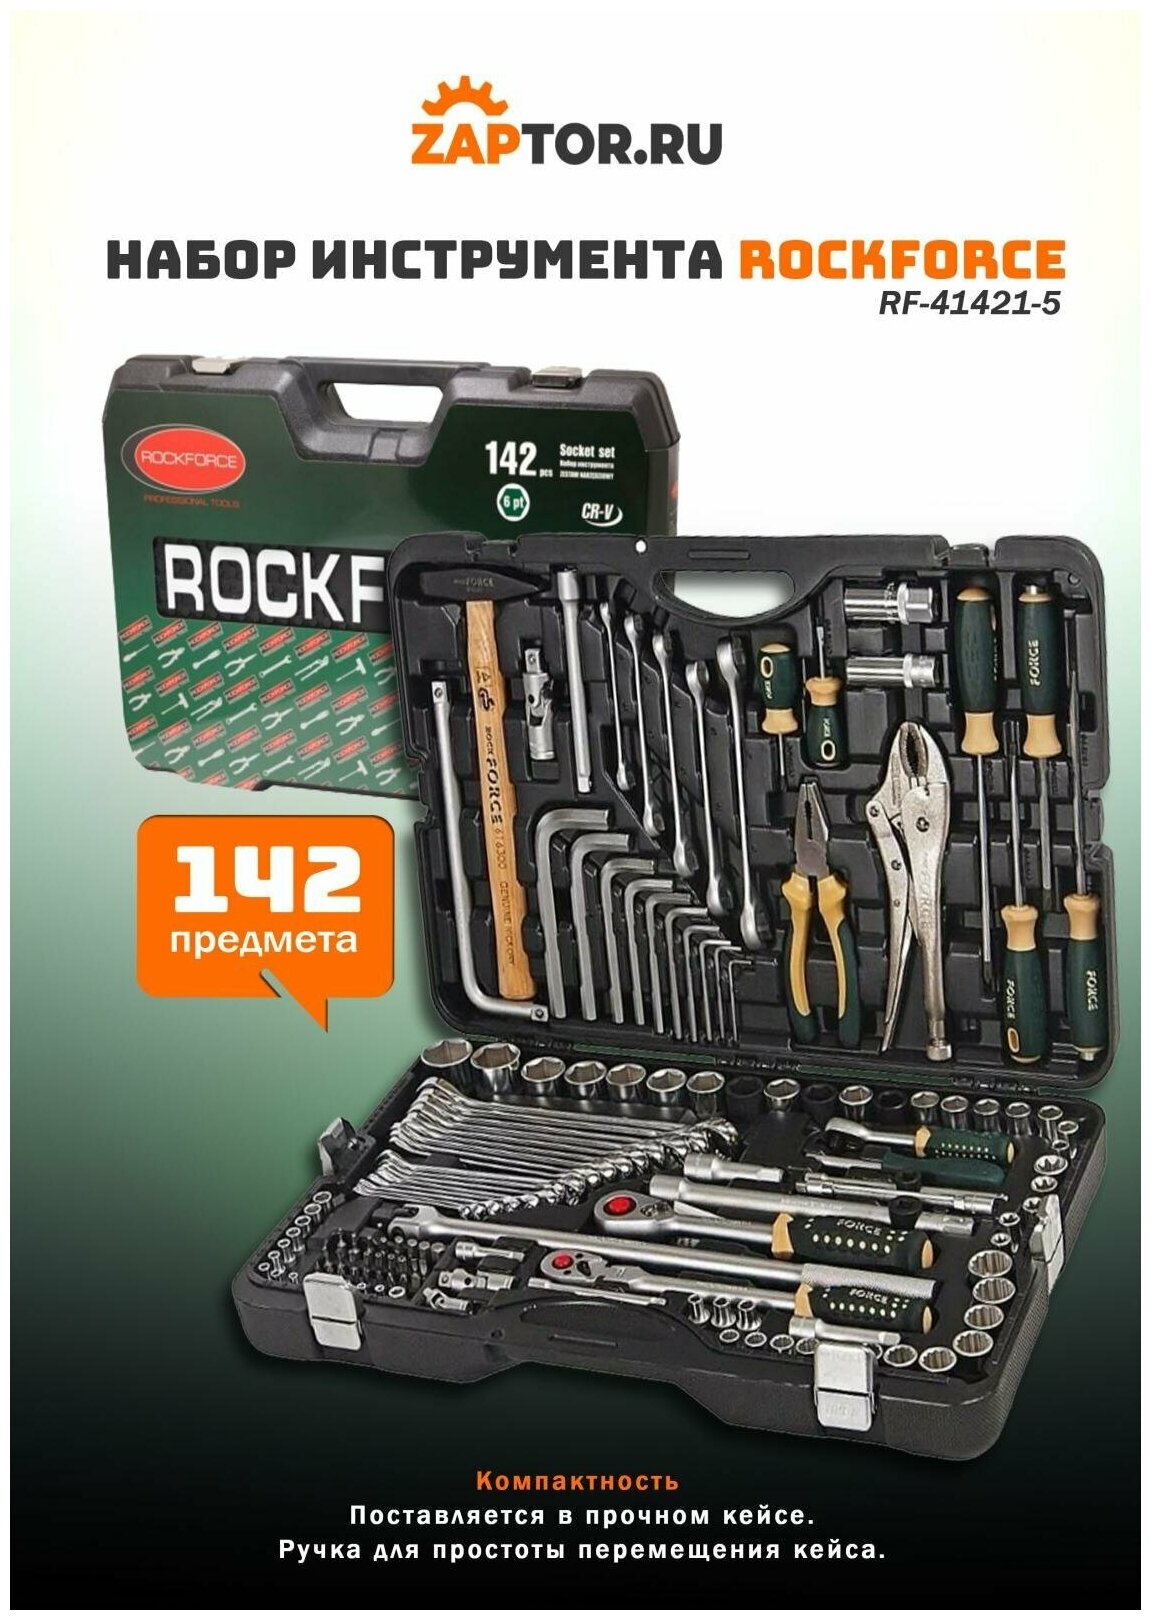 Набор инструмента Rockforce Rock force - фото №13